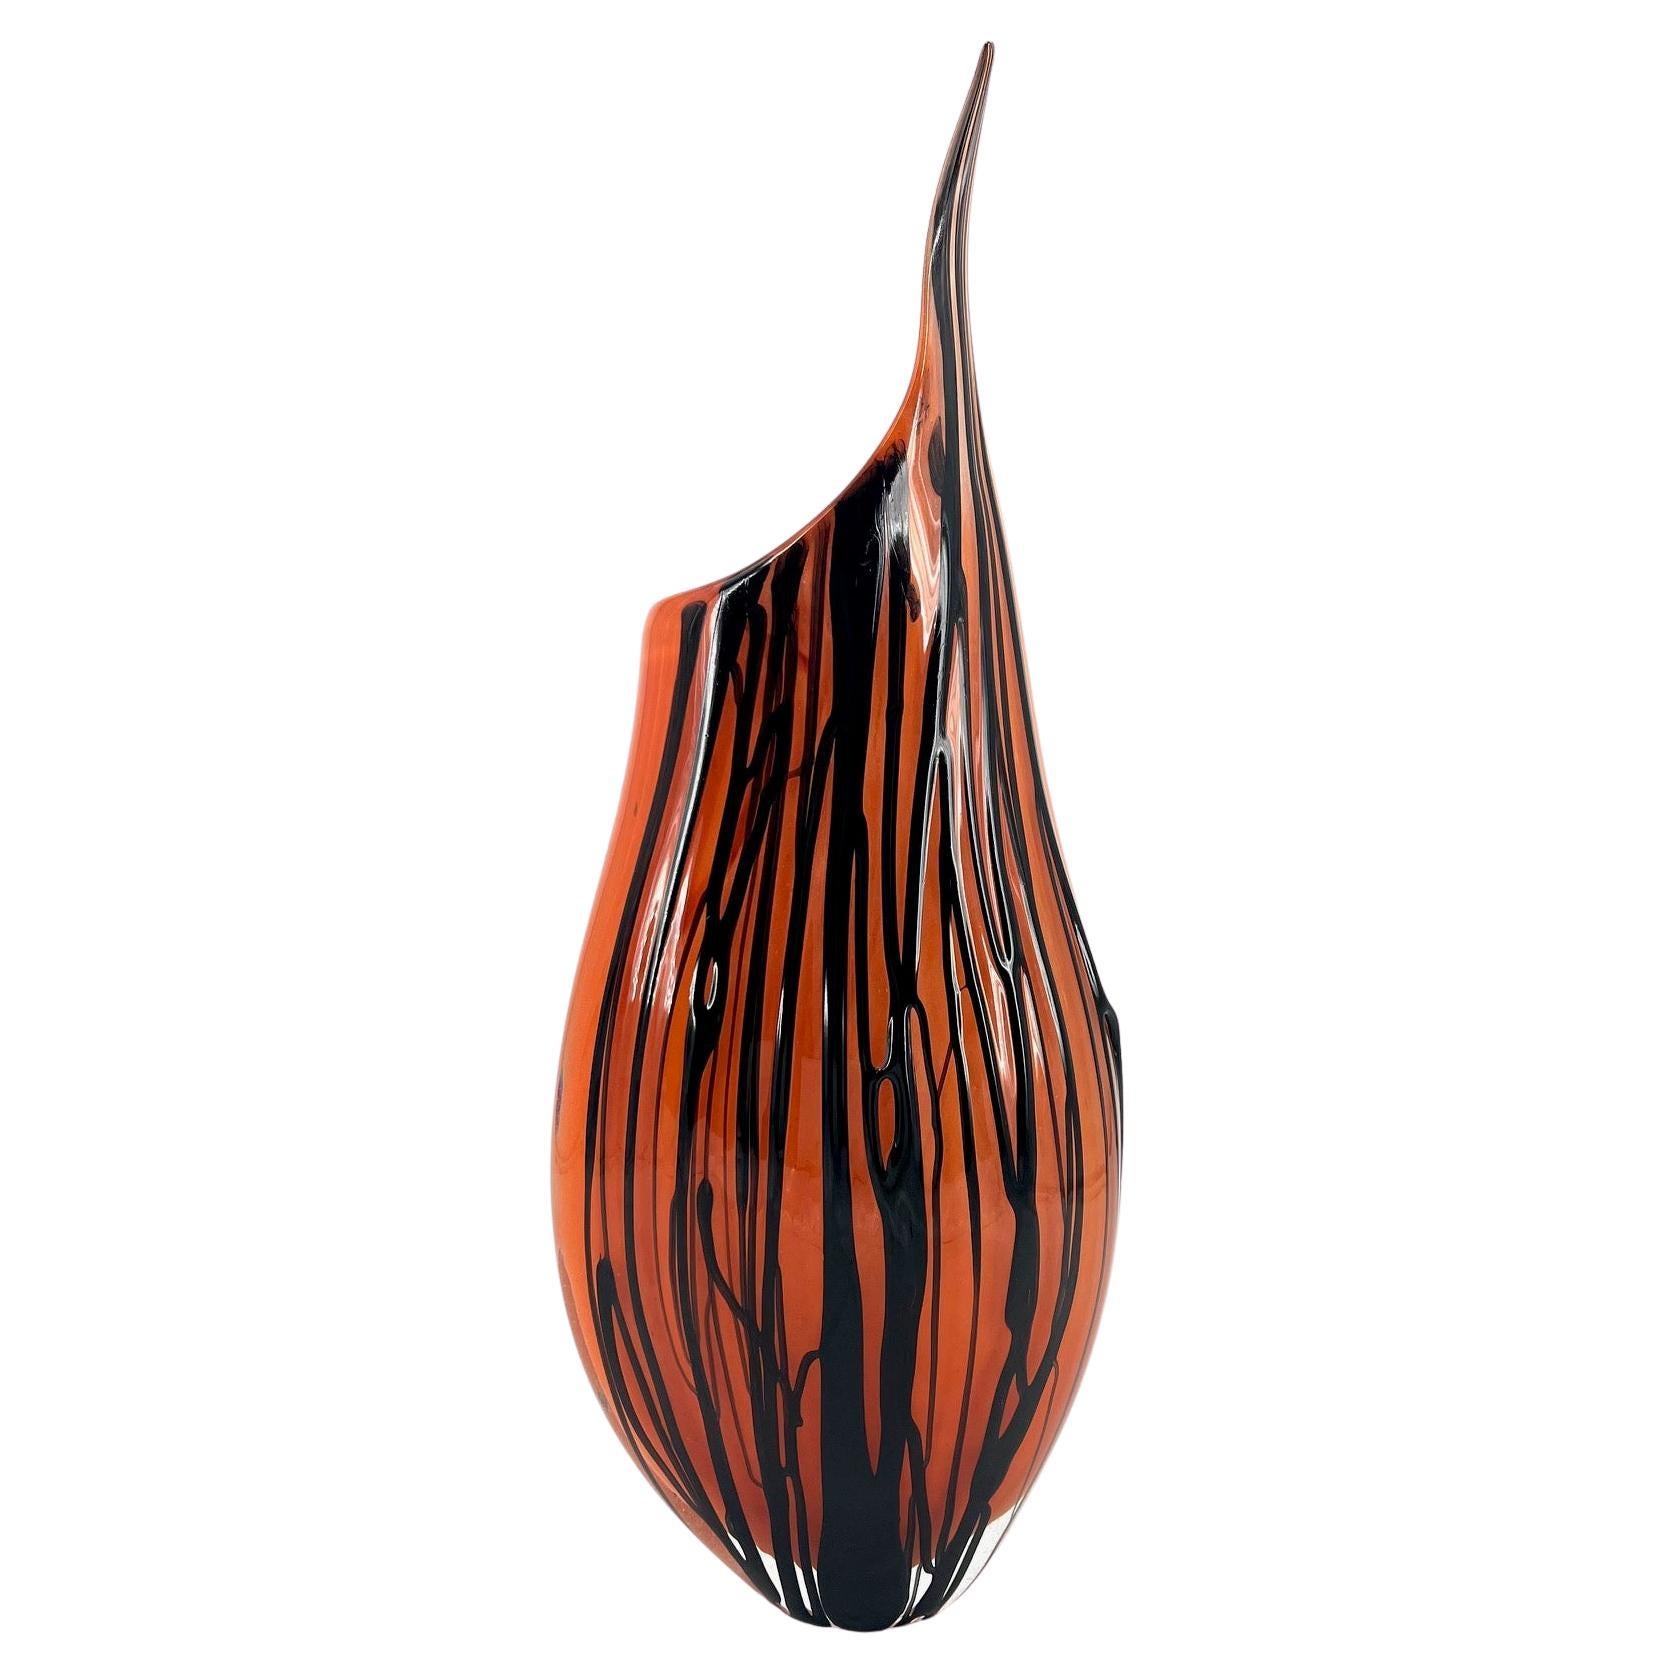 1295 Murano Hand Made Murrine Glass Vase For Sale